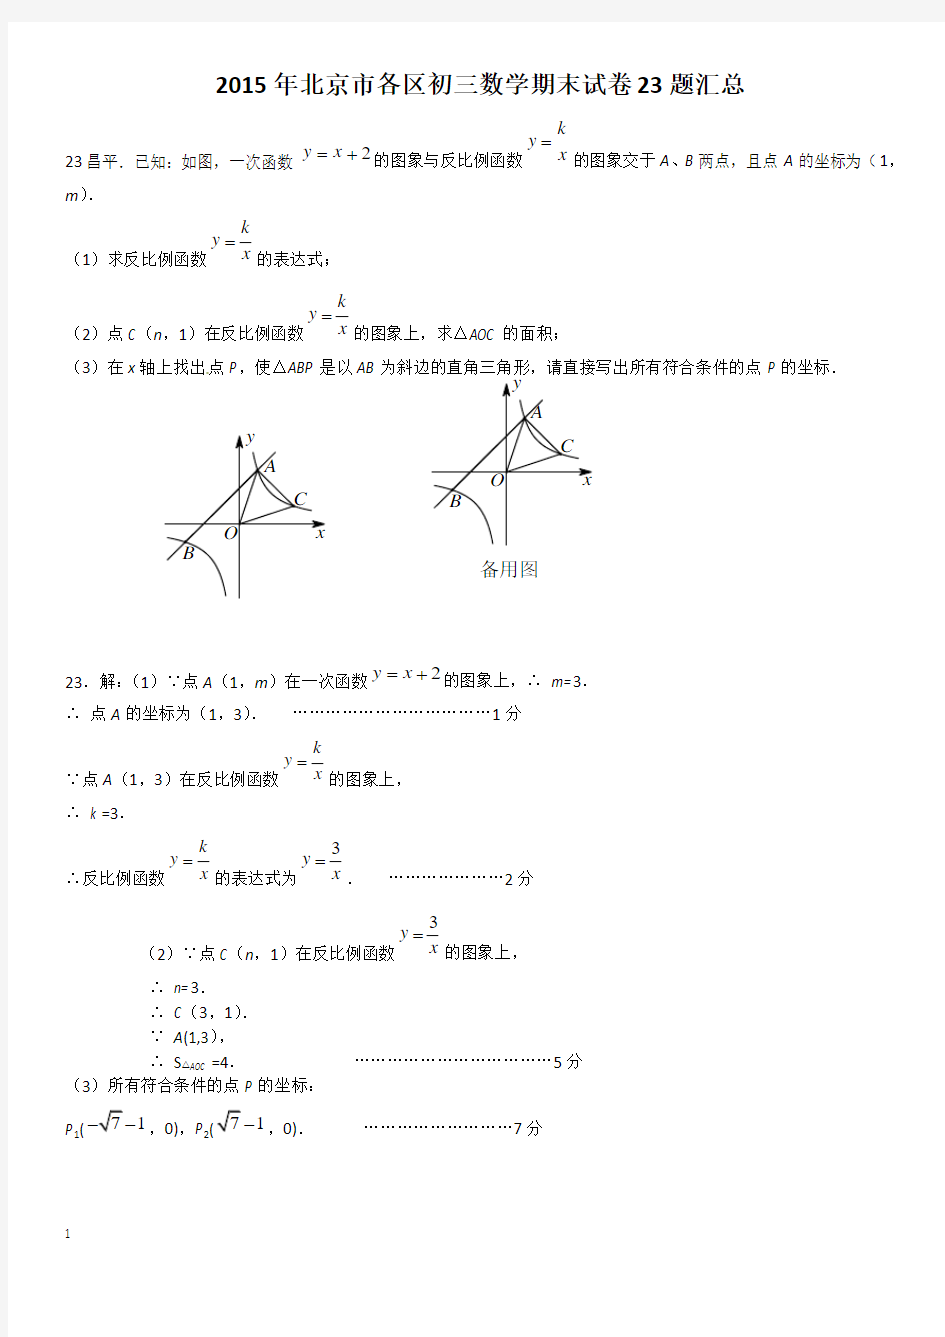 教师版2015年北京市初三数学期末试题23题汇总